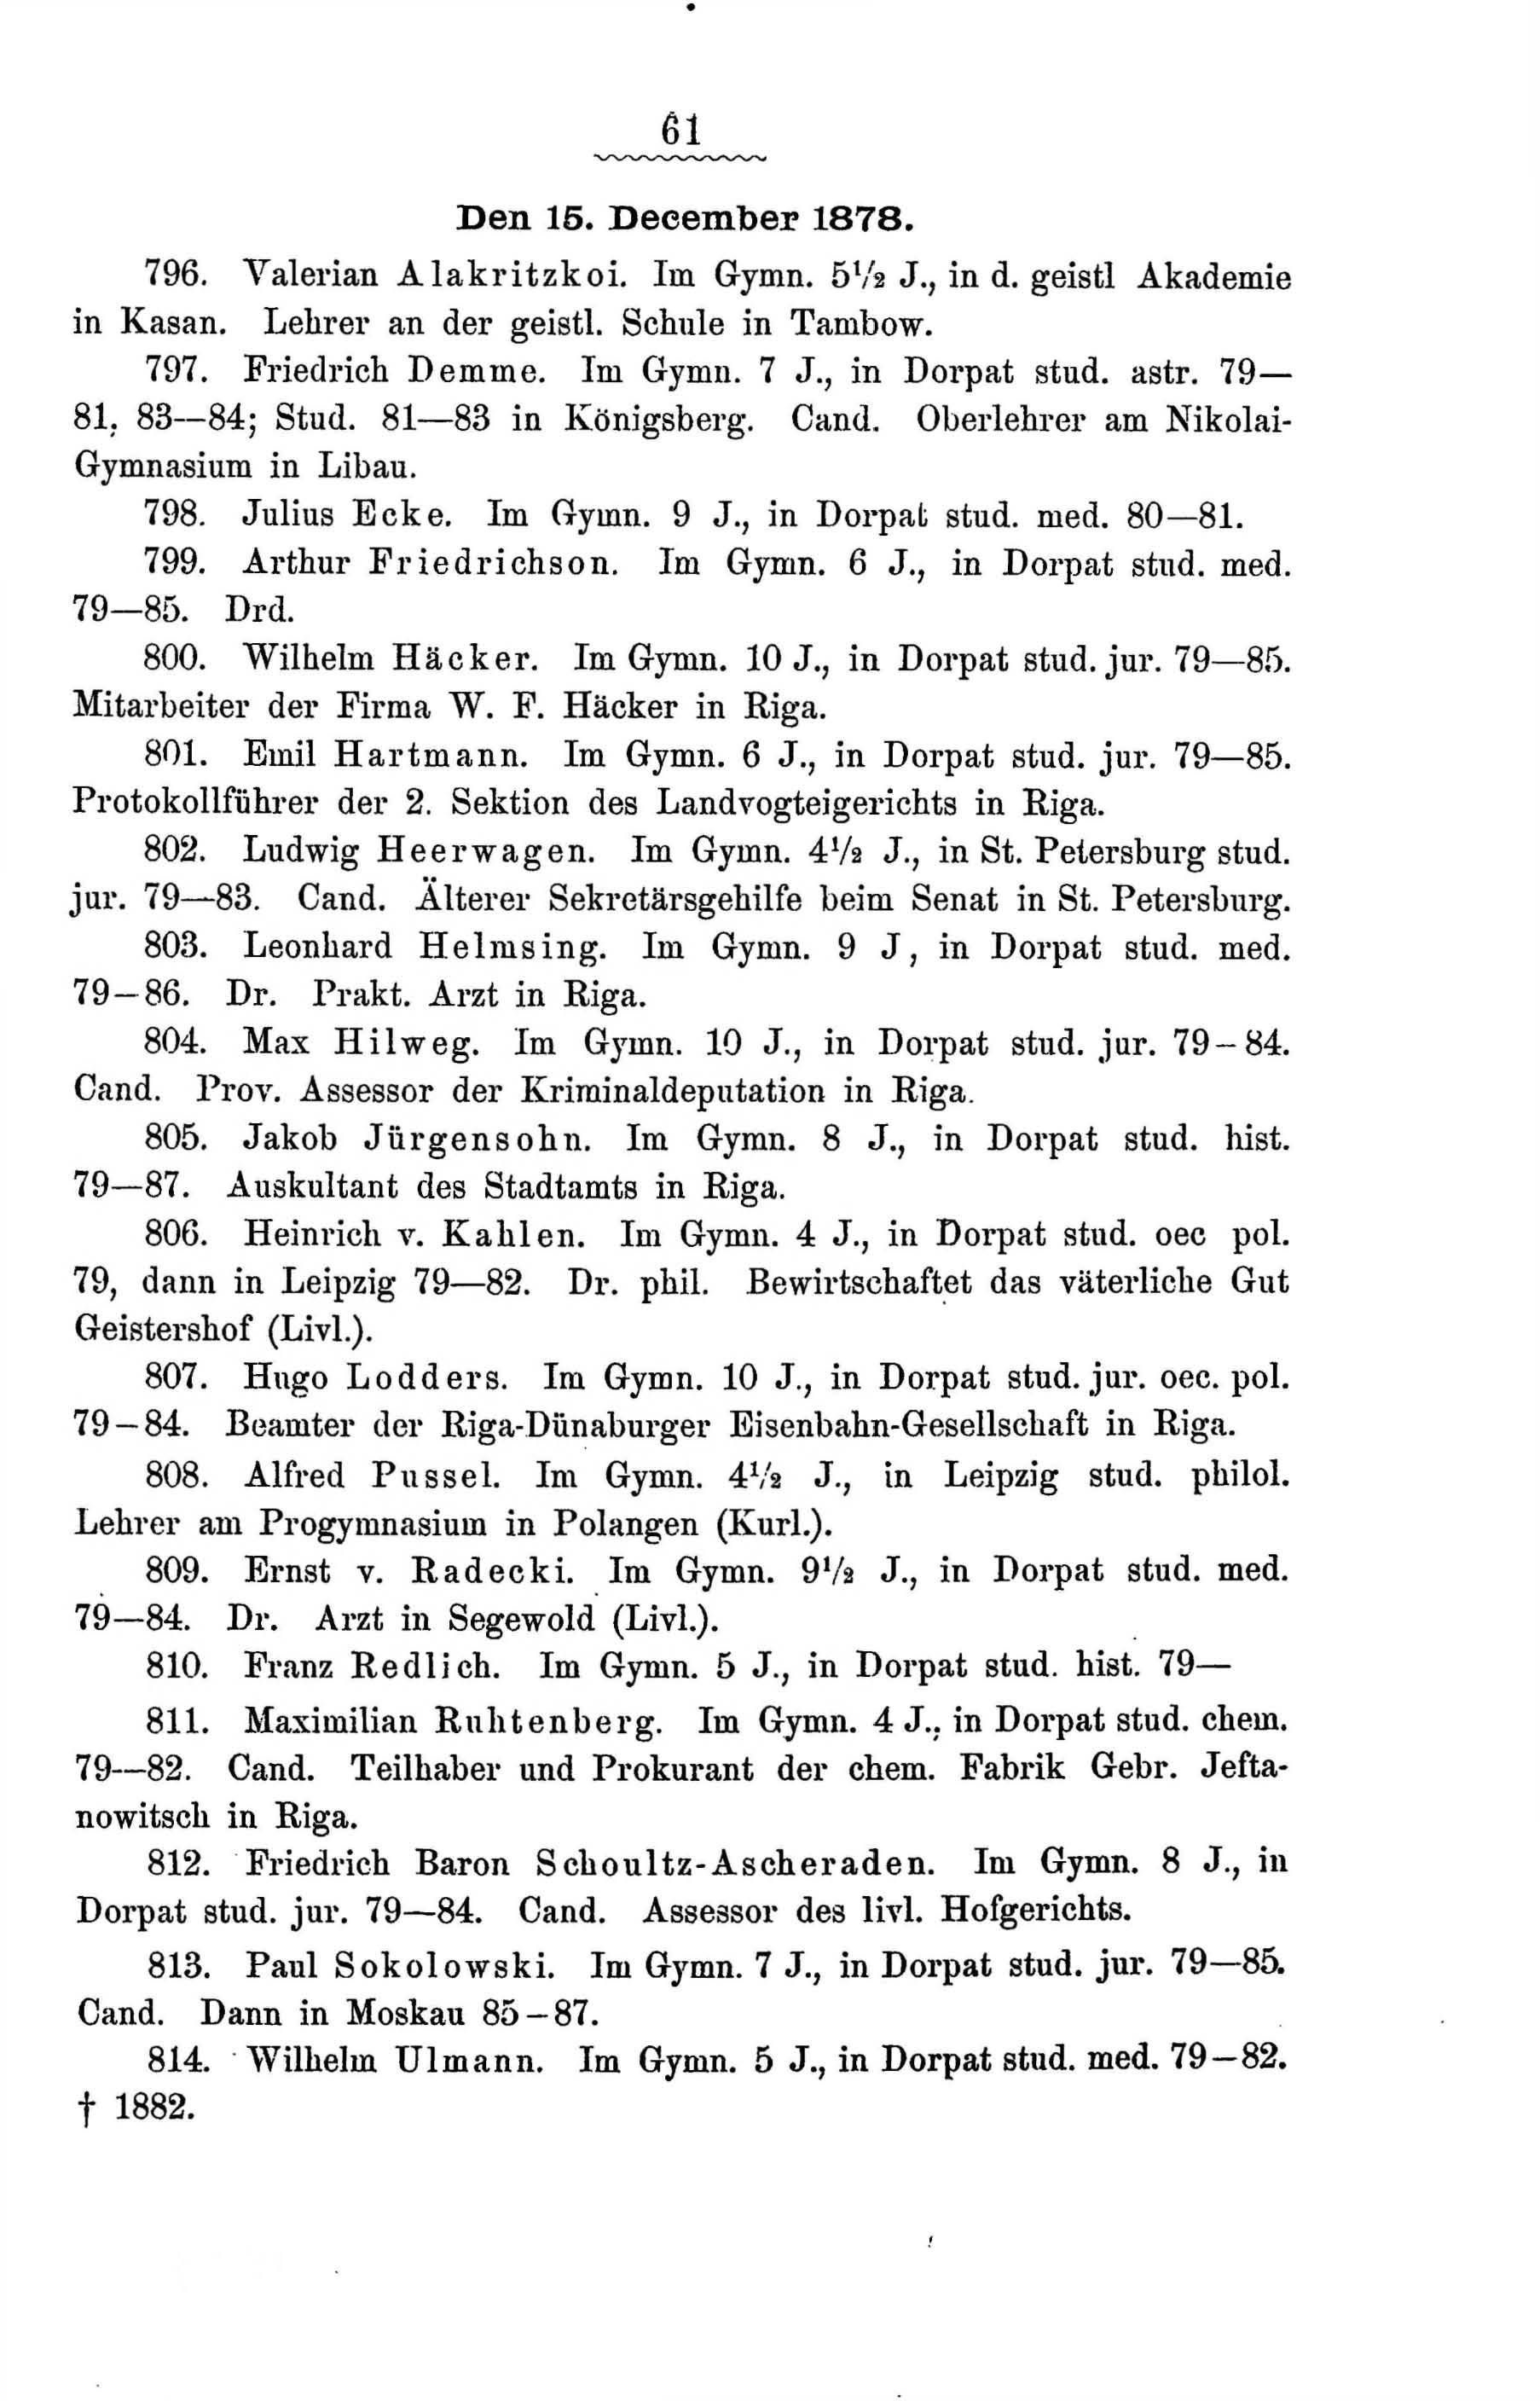 Zur Geschichte des Gouvernements-Gymnasiums in Riga (1888) | 114. Põhitekst